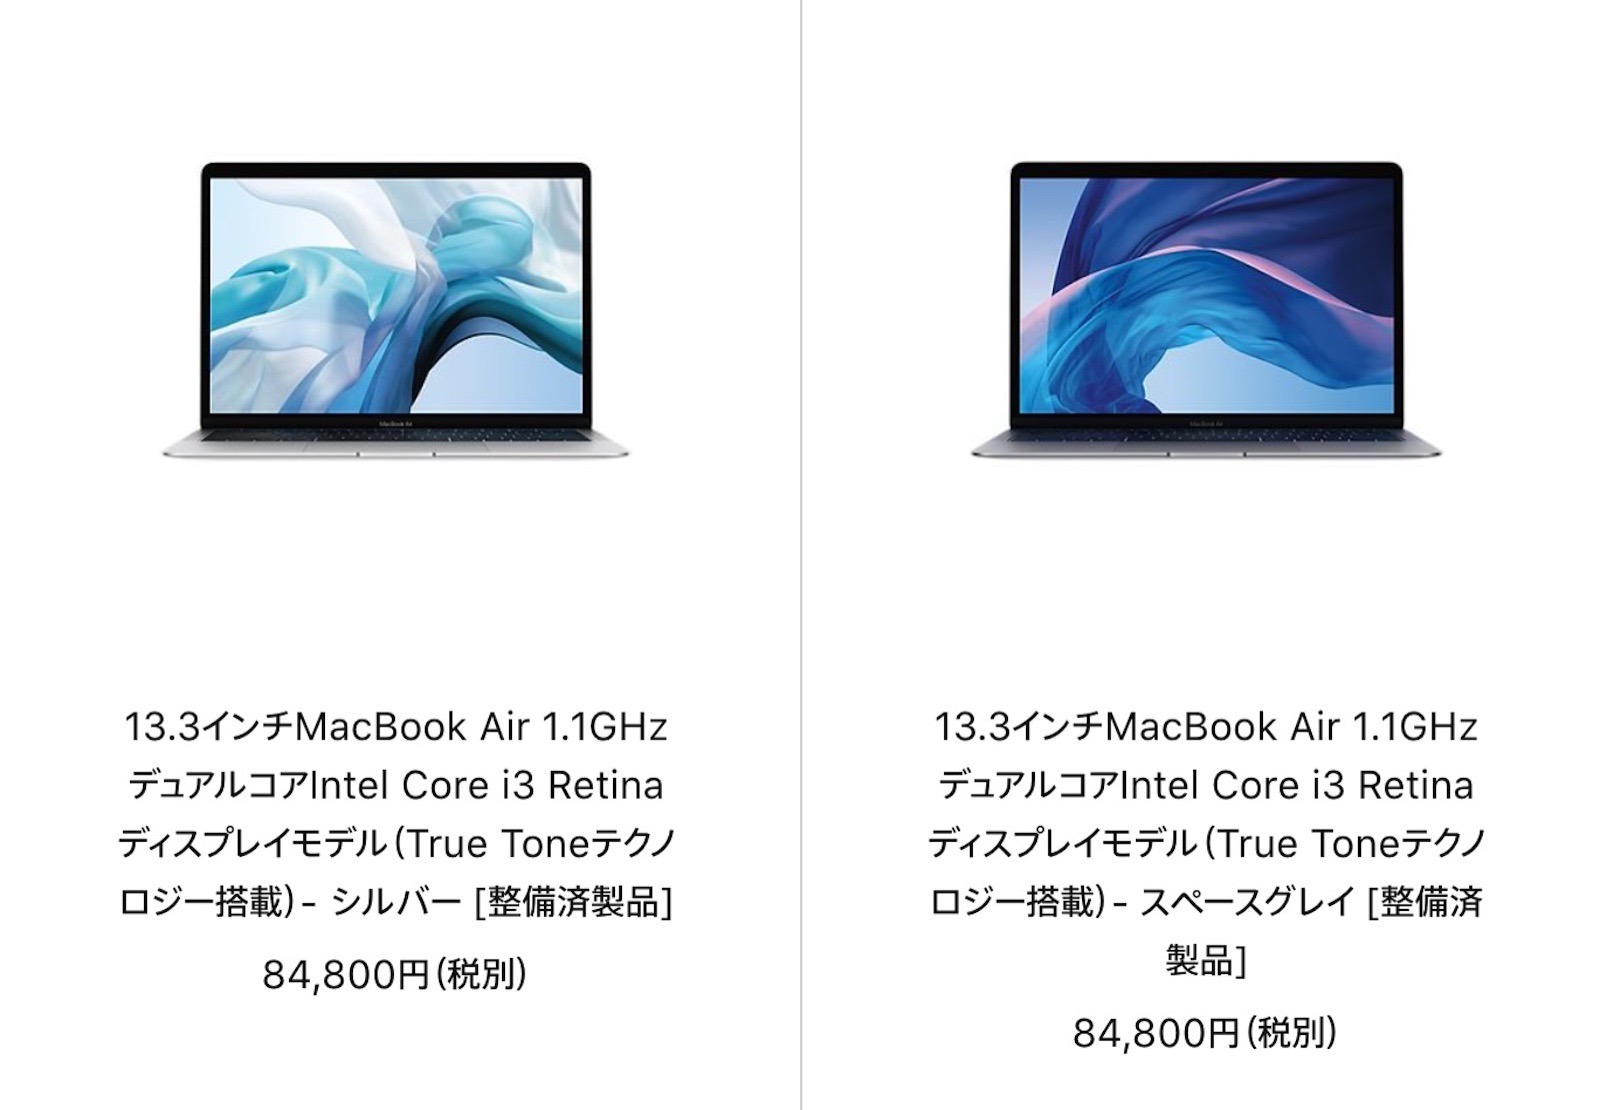 apple-refurbished-macbook-air-202210205.jpg